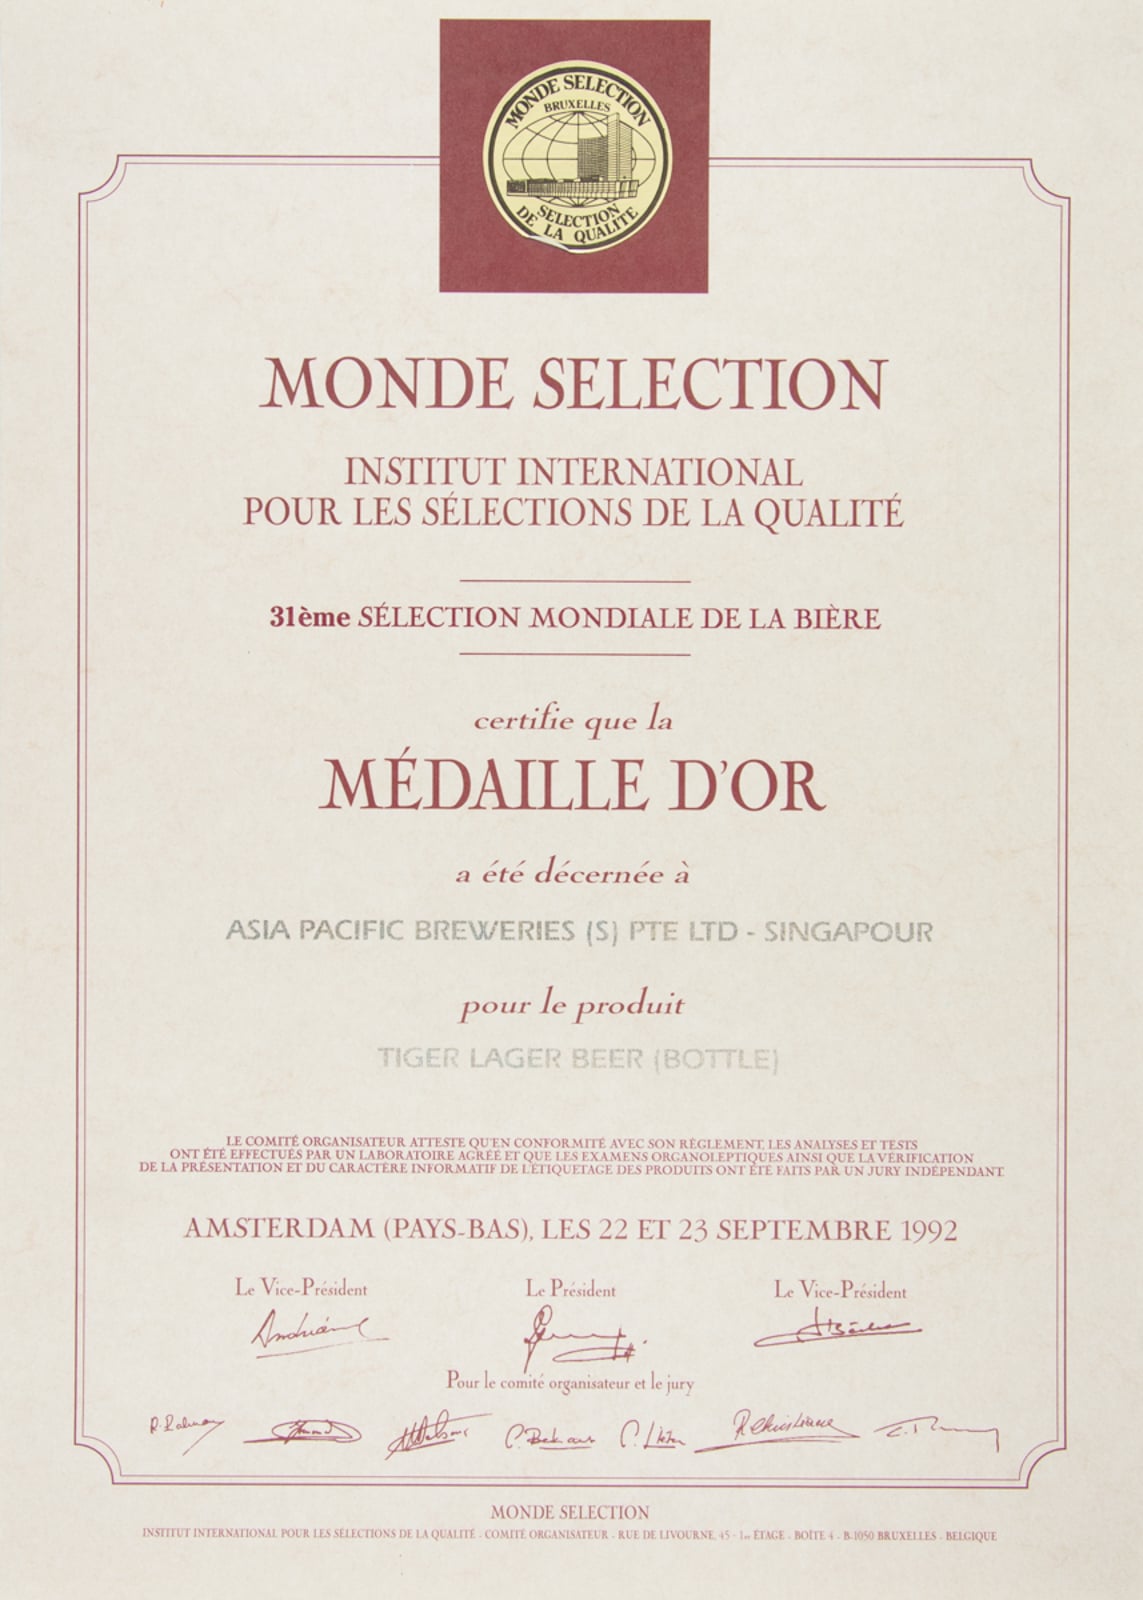 Tiger Lager Beer - Bottles - Médaille d'Or, Monde Sélection Certificate 1992